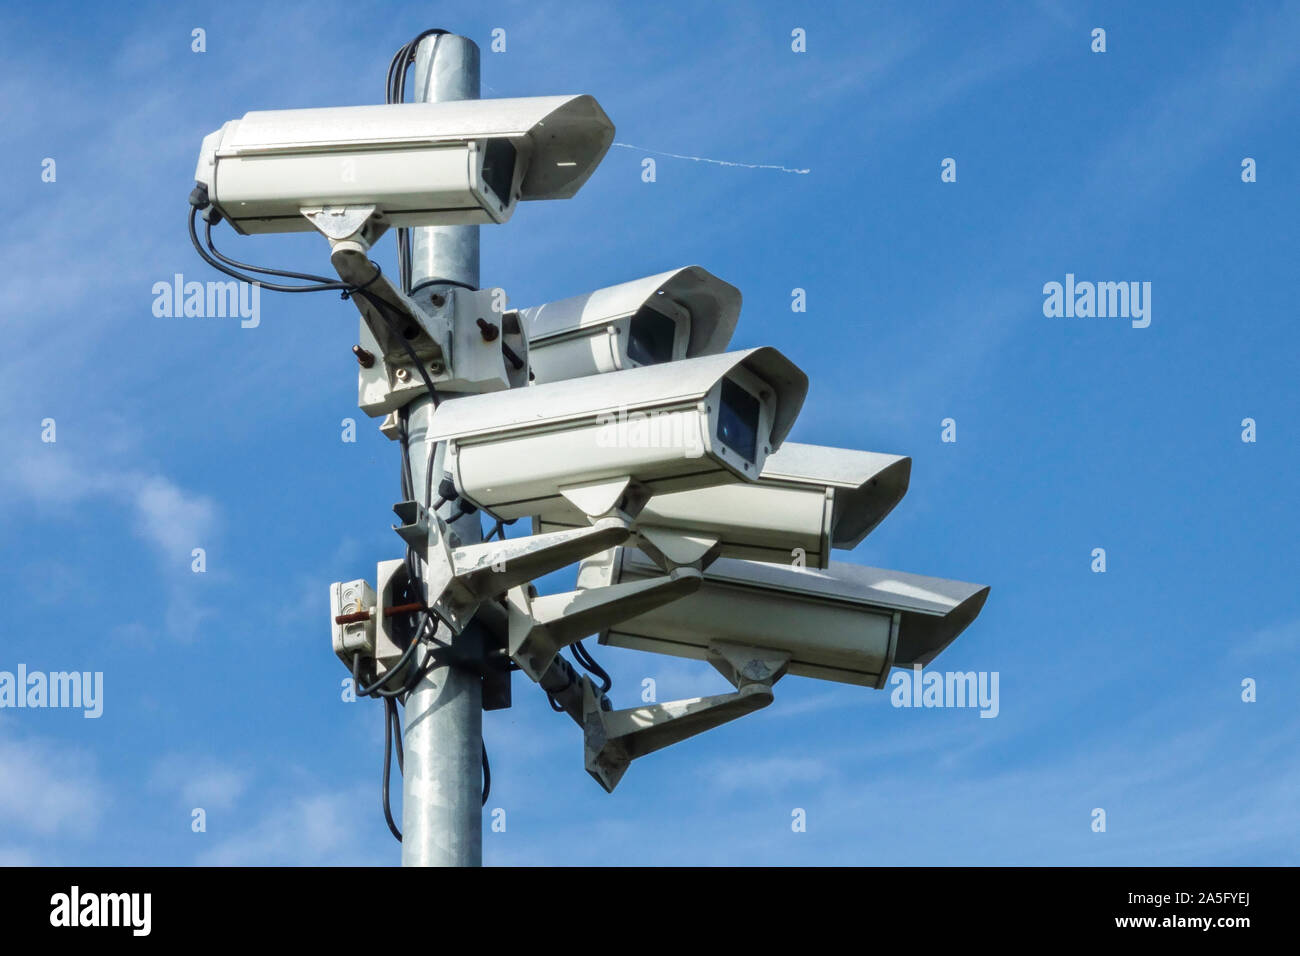 Cámaras CCTV Alemania tecnología de reconocimiento, vigilancia del espacio público, CCTV Cámara de seguridad pública Foto de stock